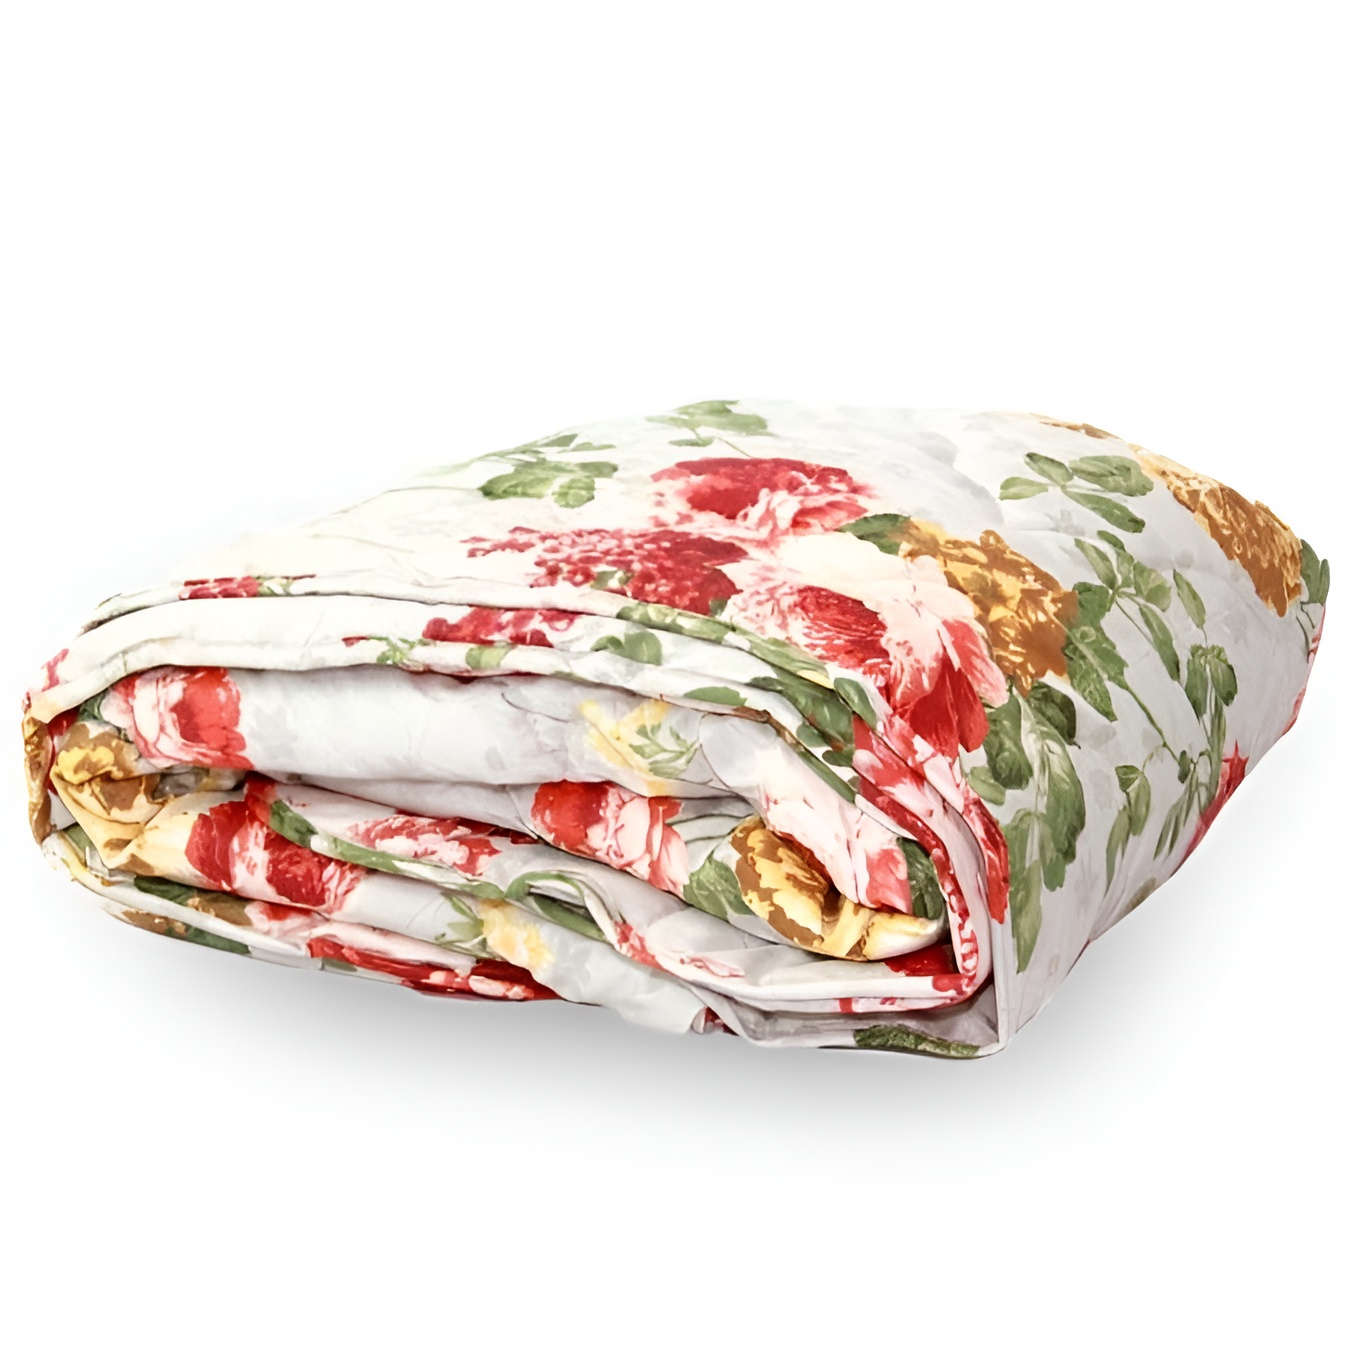 Одеяло Tiffany Лёгкое (140х205 см), размер 140х205 см plw162488 Одеяло Tiffany Лёгкое (140х205 см) - фото 1